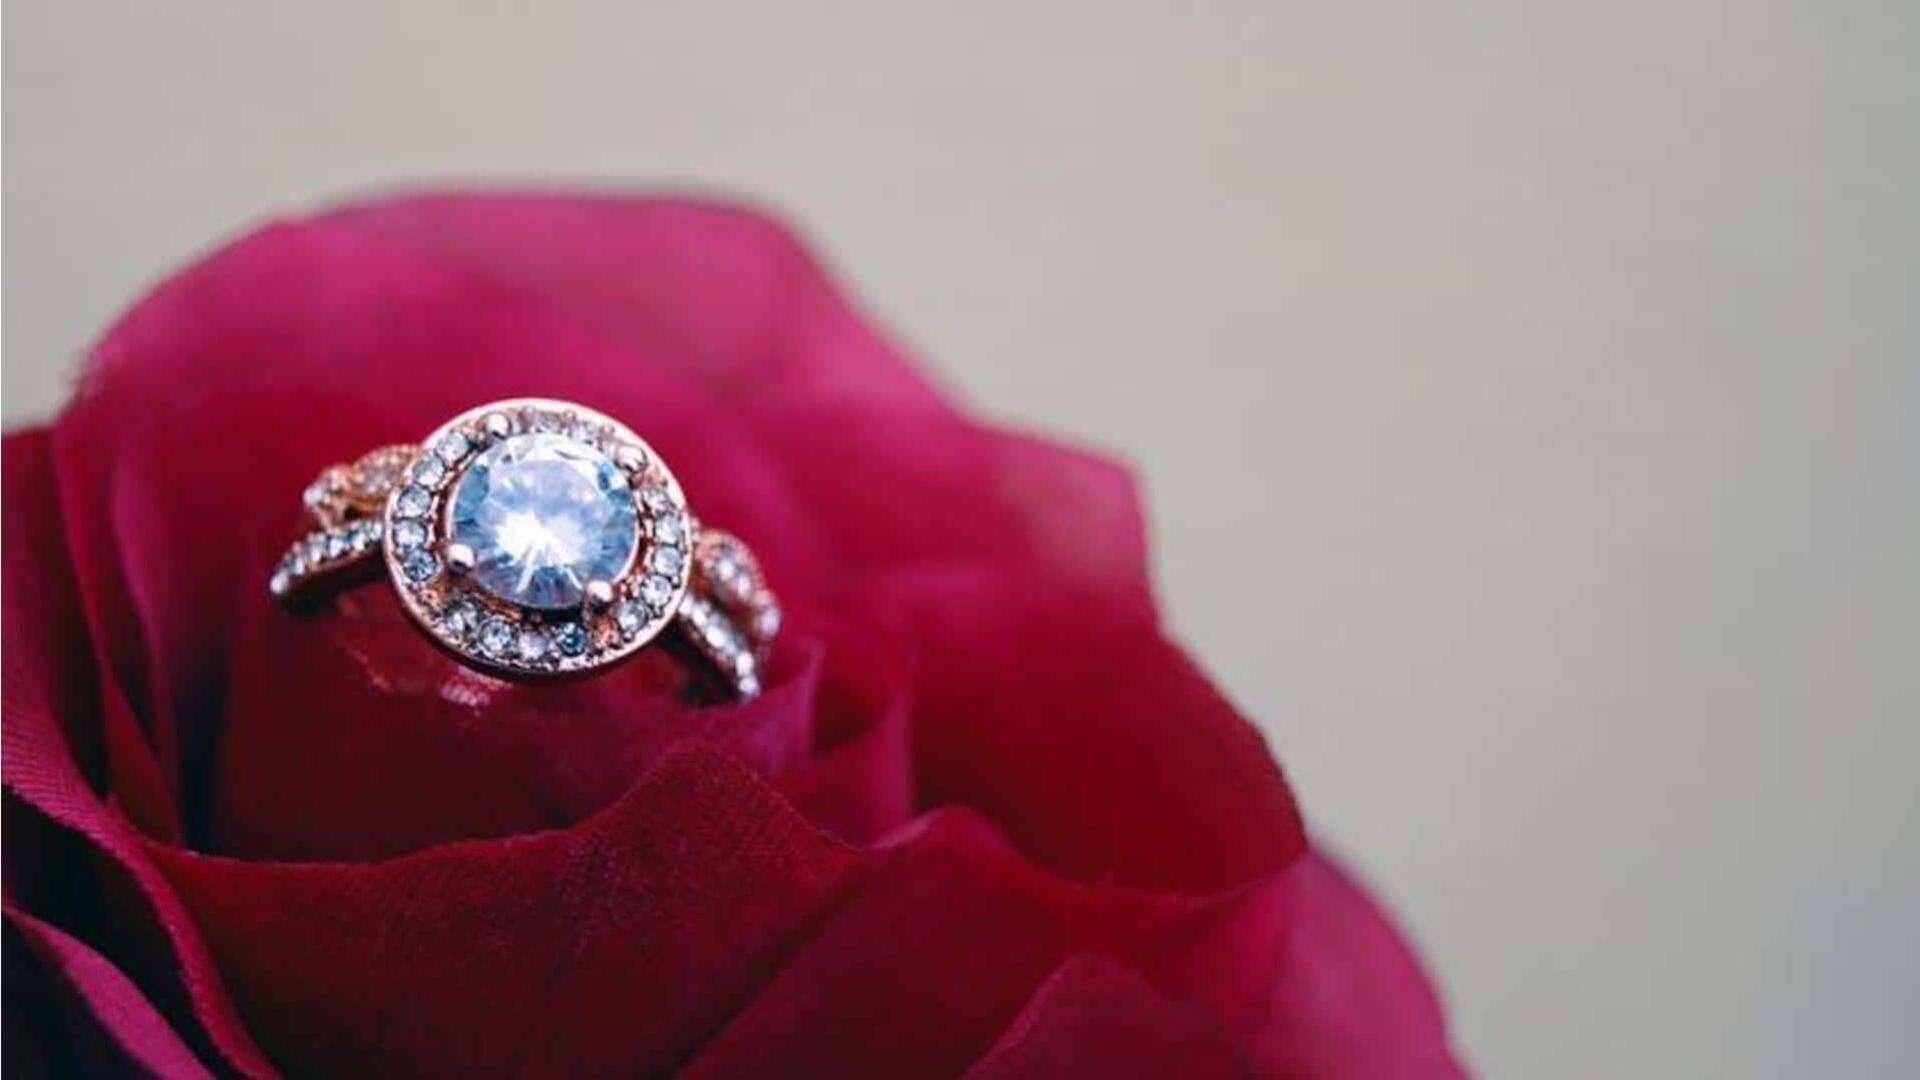 Kiat-kiat memilih cincin pertunangan berlian yang sempurna